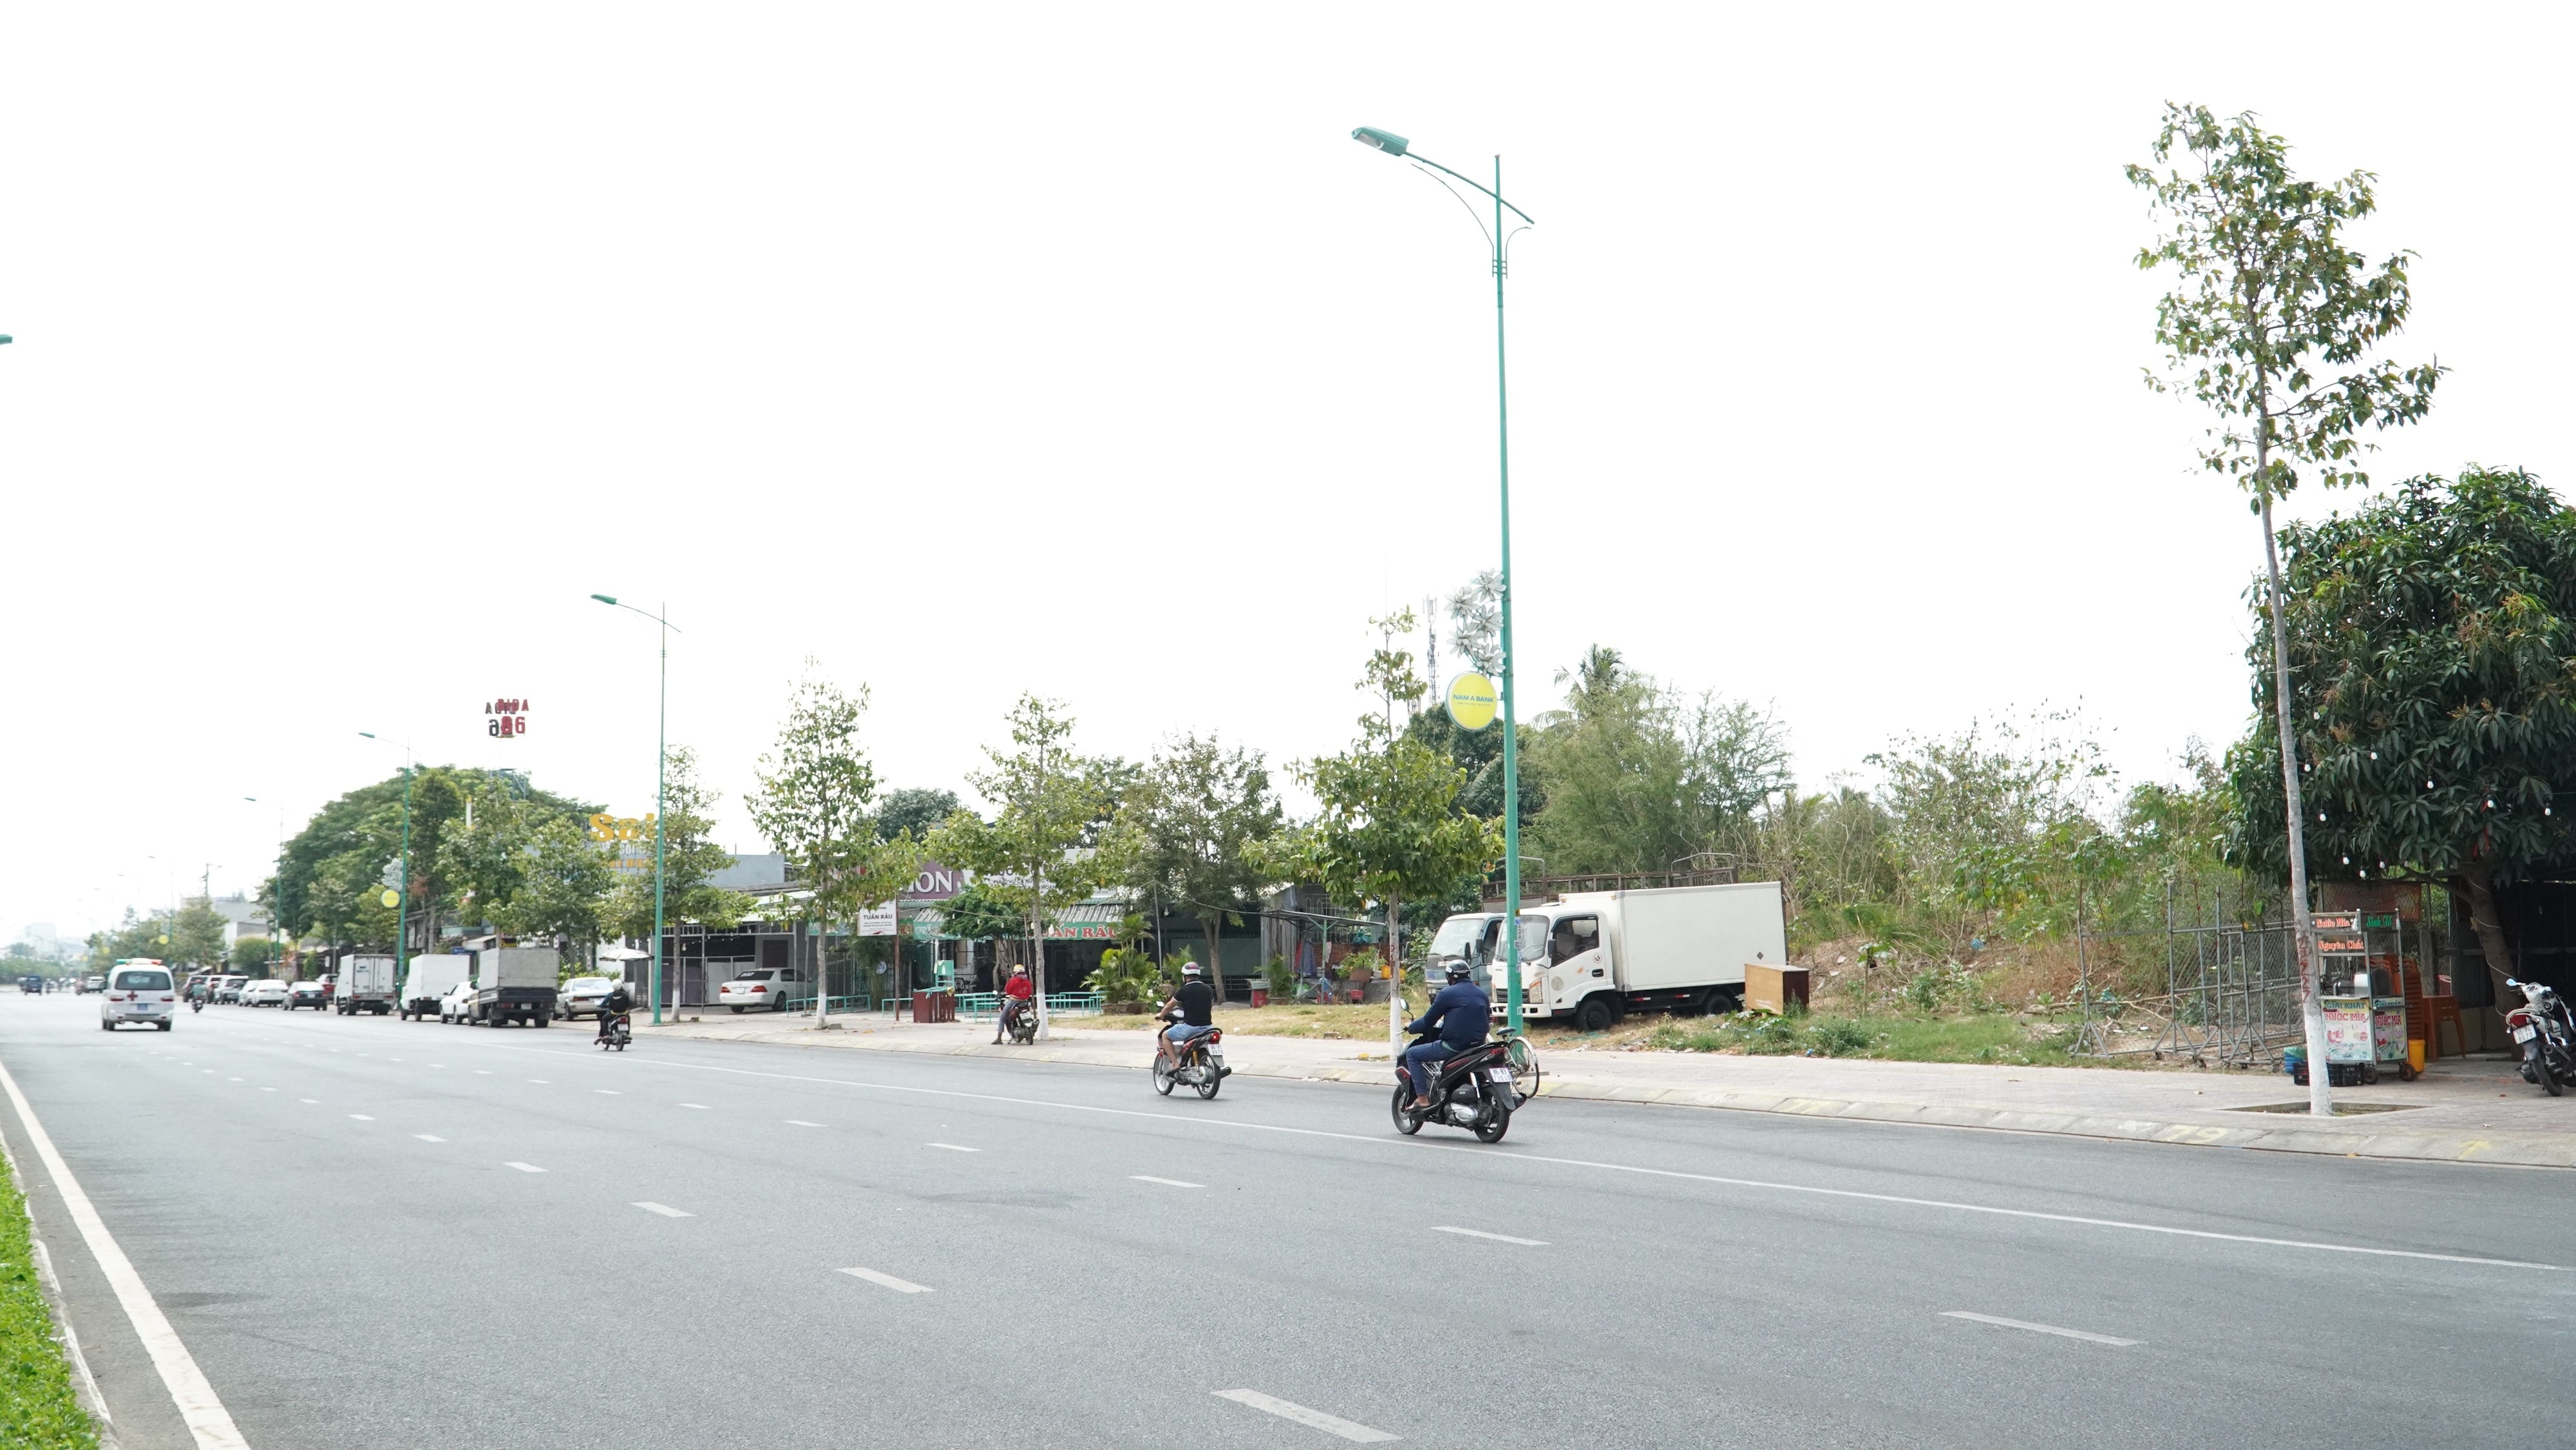 Immobilier - Les dirigeants de la ville de Phan Thiet ont répondu au contenu publié par Messenger sur le projet de zone résidentielle de Nam Le Duan (Figure 2).